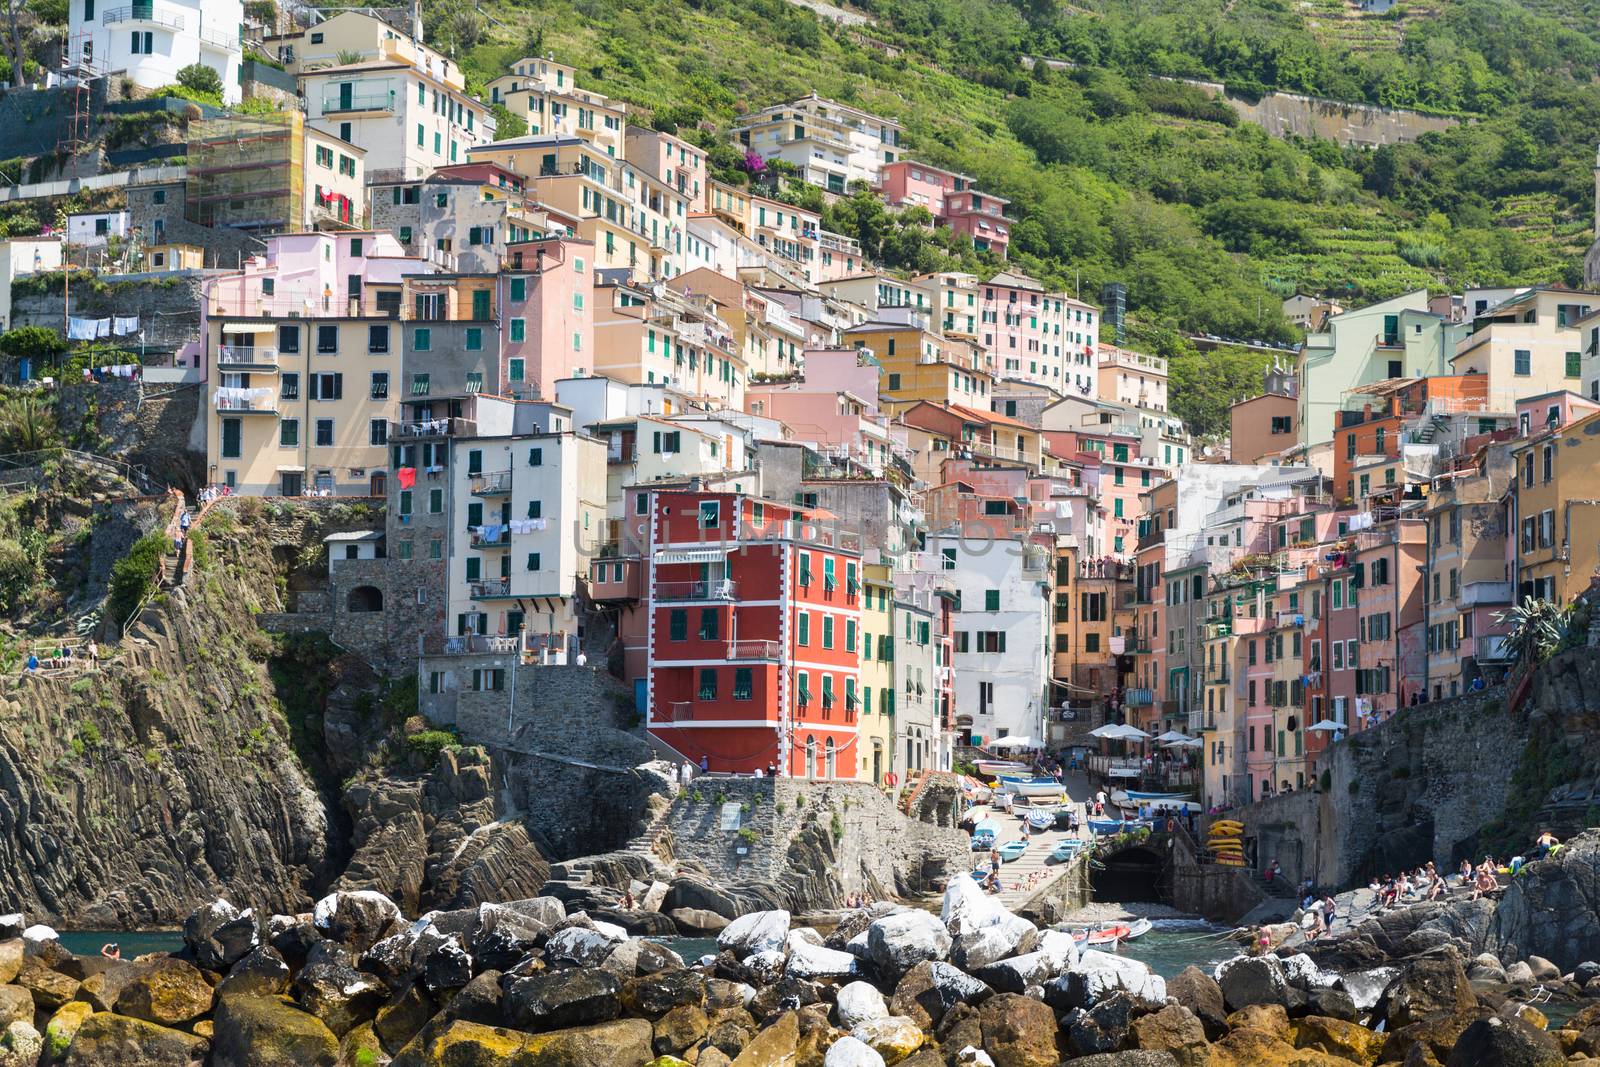 The village of Riomaggiore of the Cinque Terre, by chrisukphoto